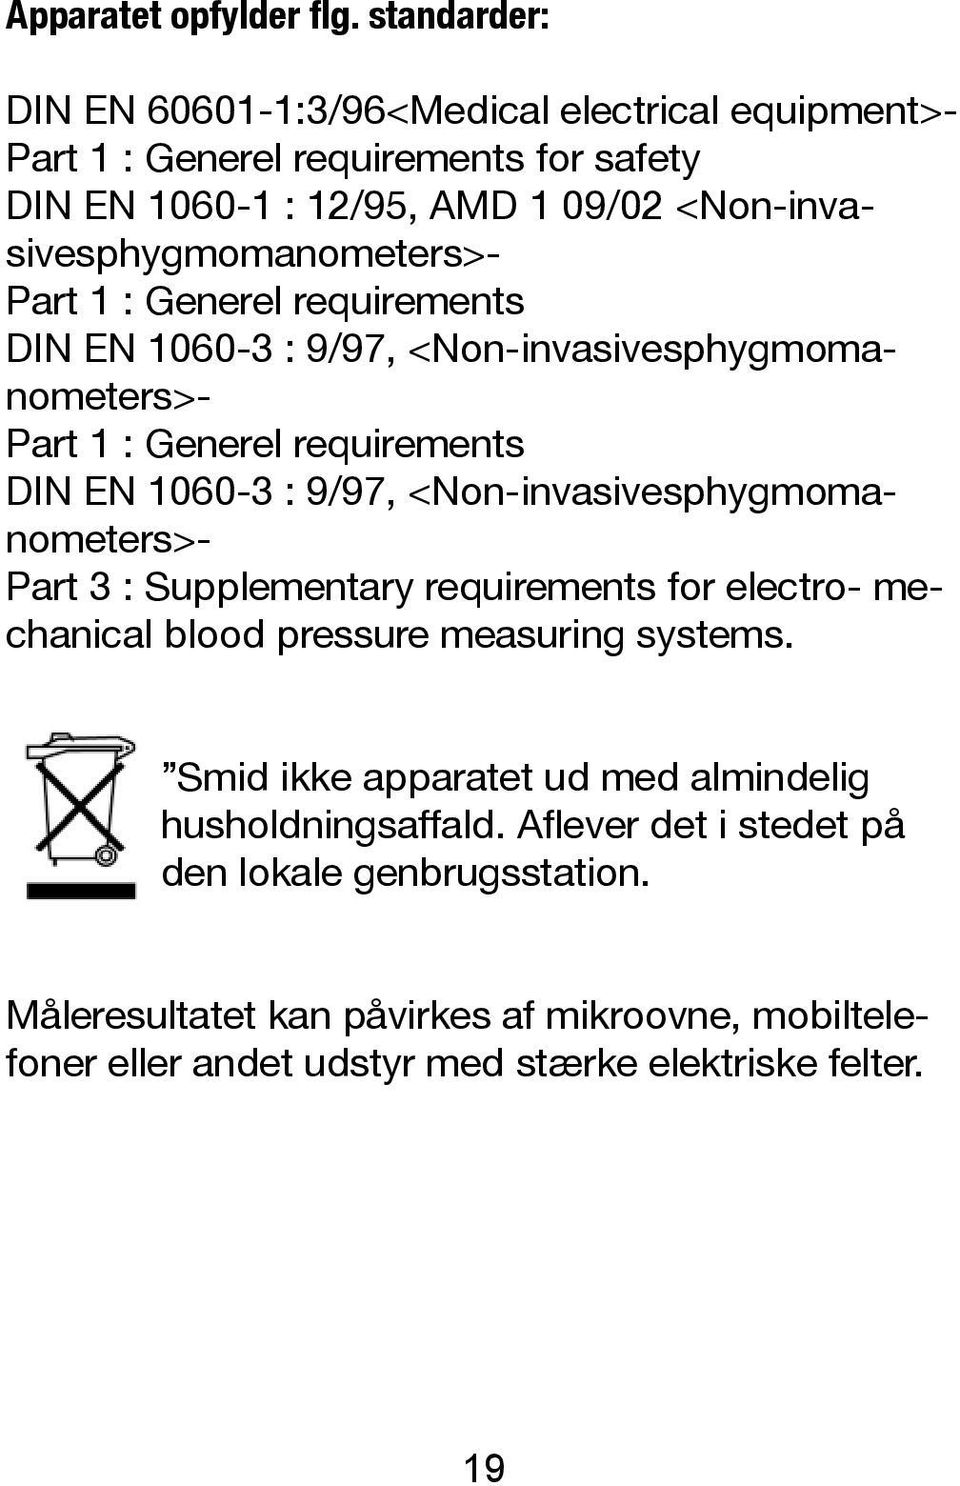 sivesphygmomanometers>- Part 1 : Generel requirements DIN EN 1060-3 : 9/97, <Non-invasivesphygmoma- nometers>- Part 1 : Generel requirements DIN EN 1060-3 : 9/97,